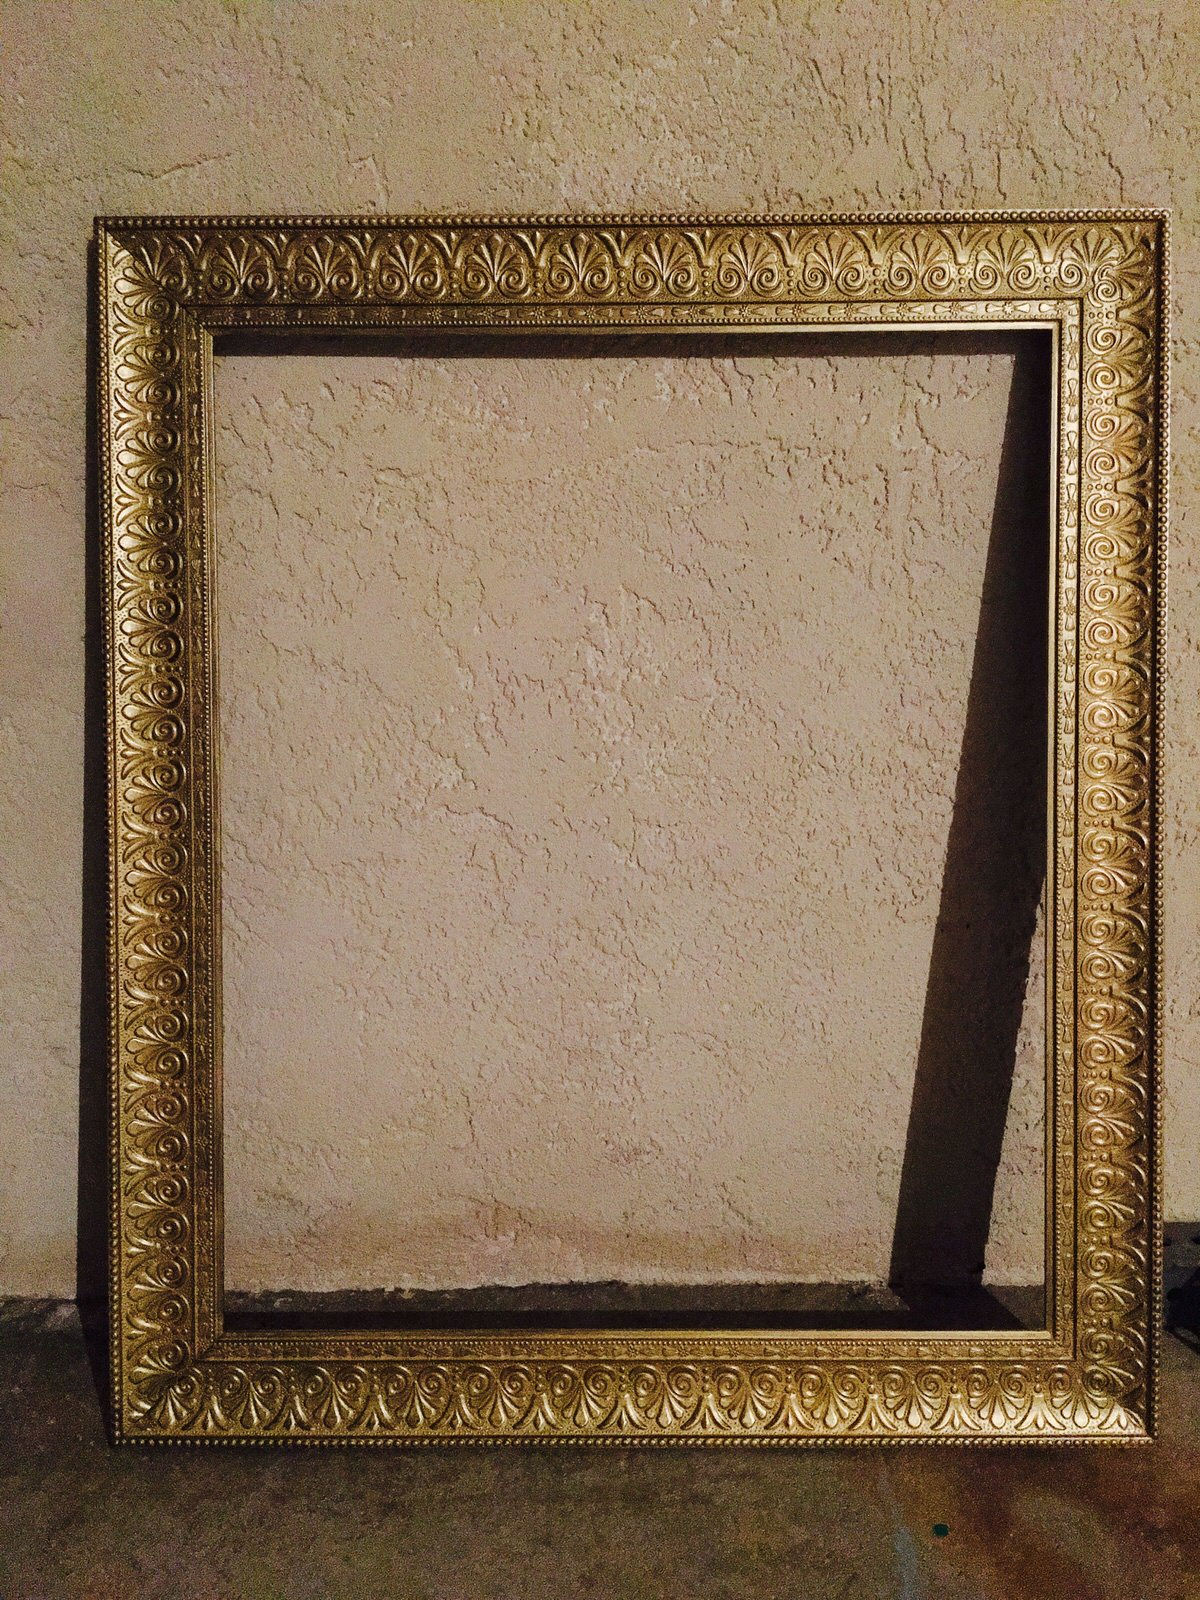  MD Gold Frame (Chalkboard) 